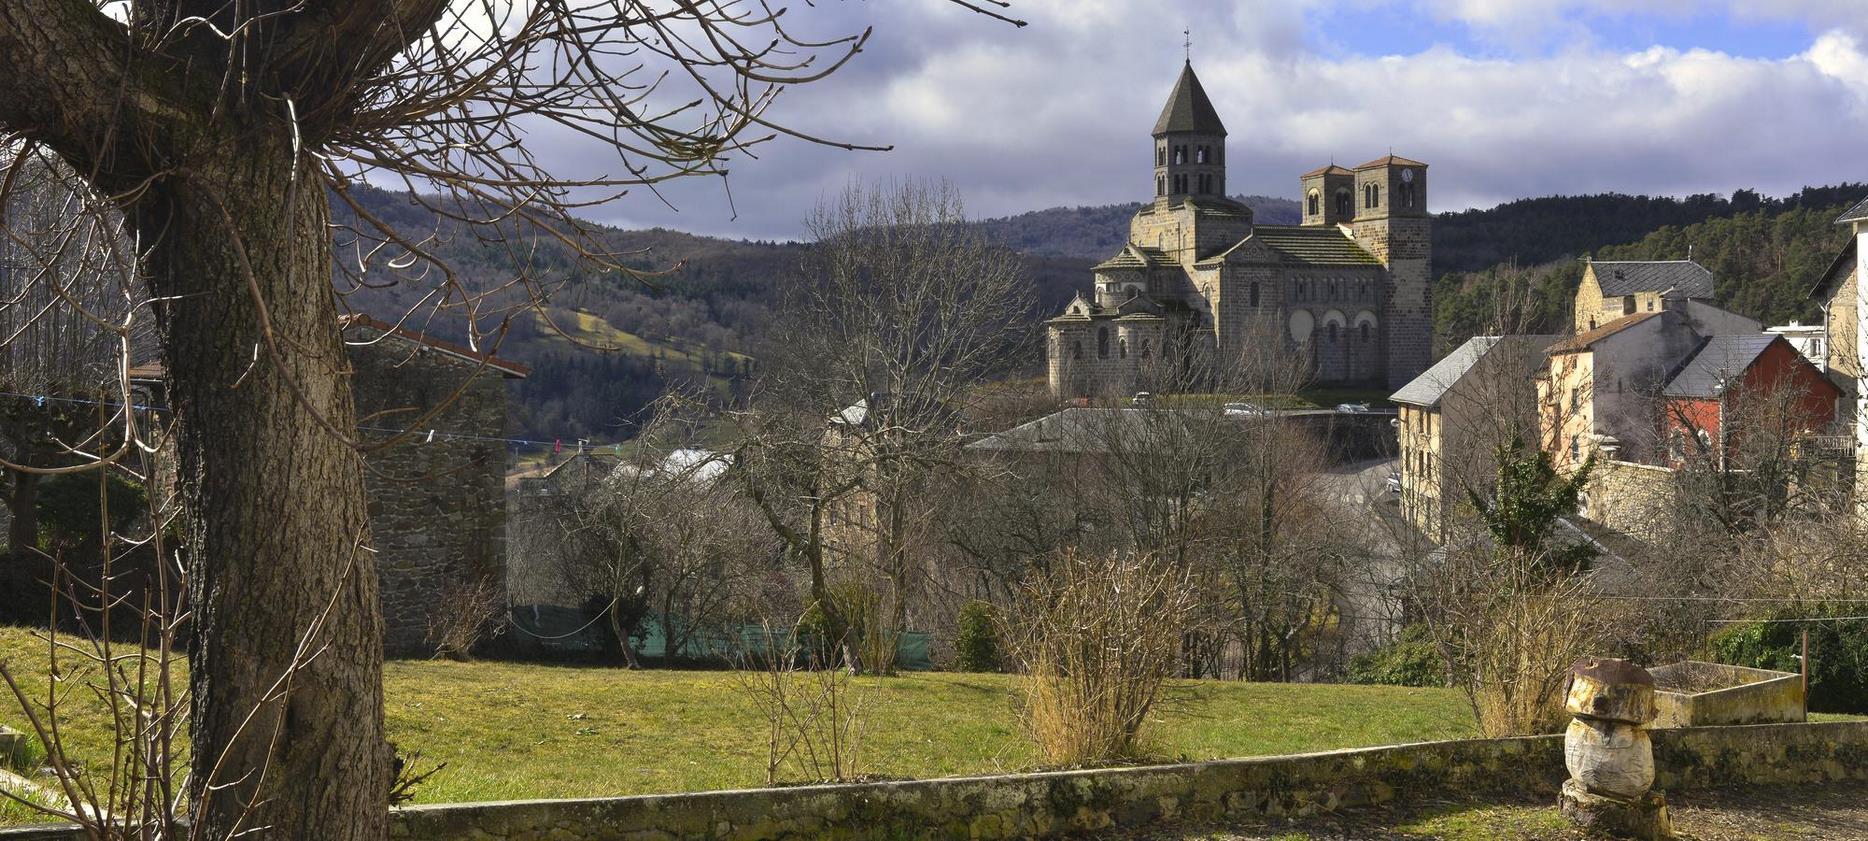 Saint Nectaire - view of the village of Puy de Dôme